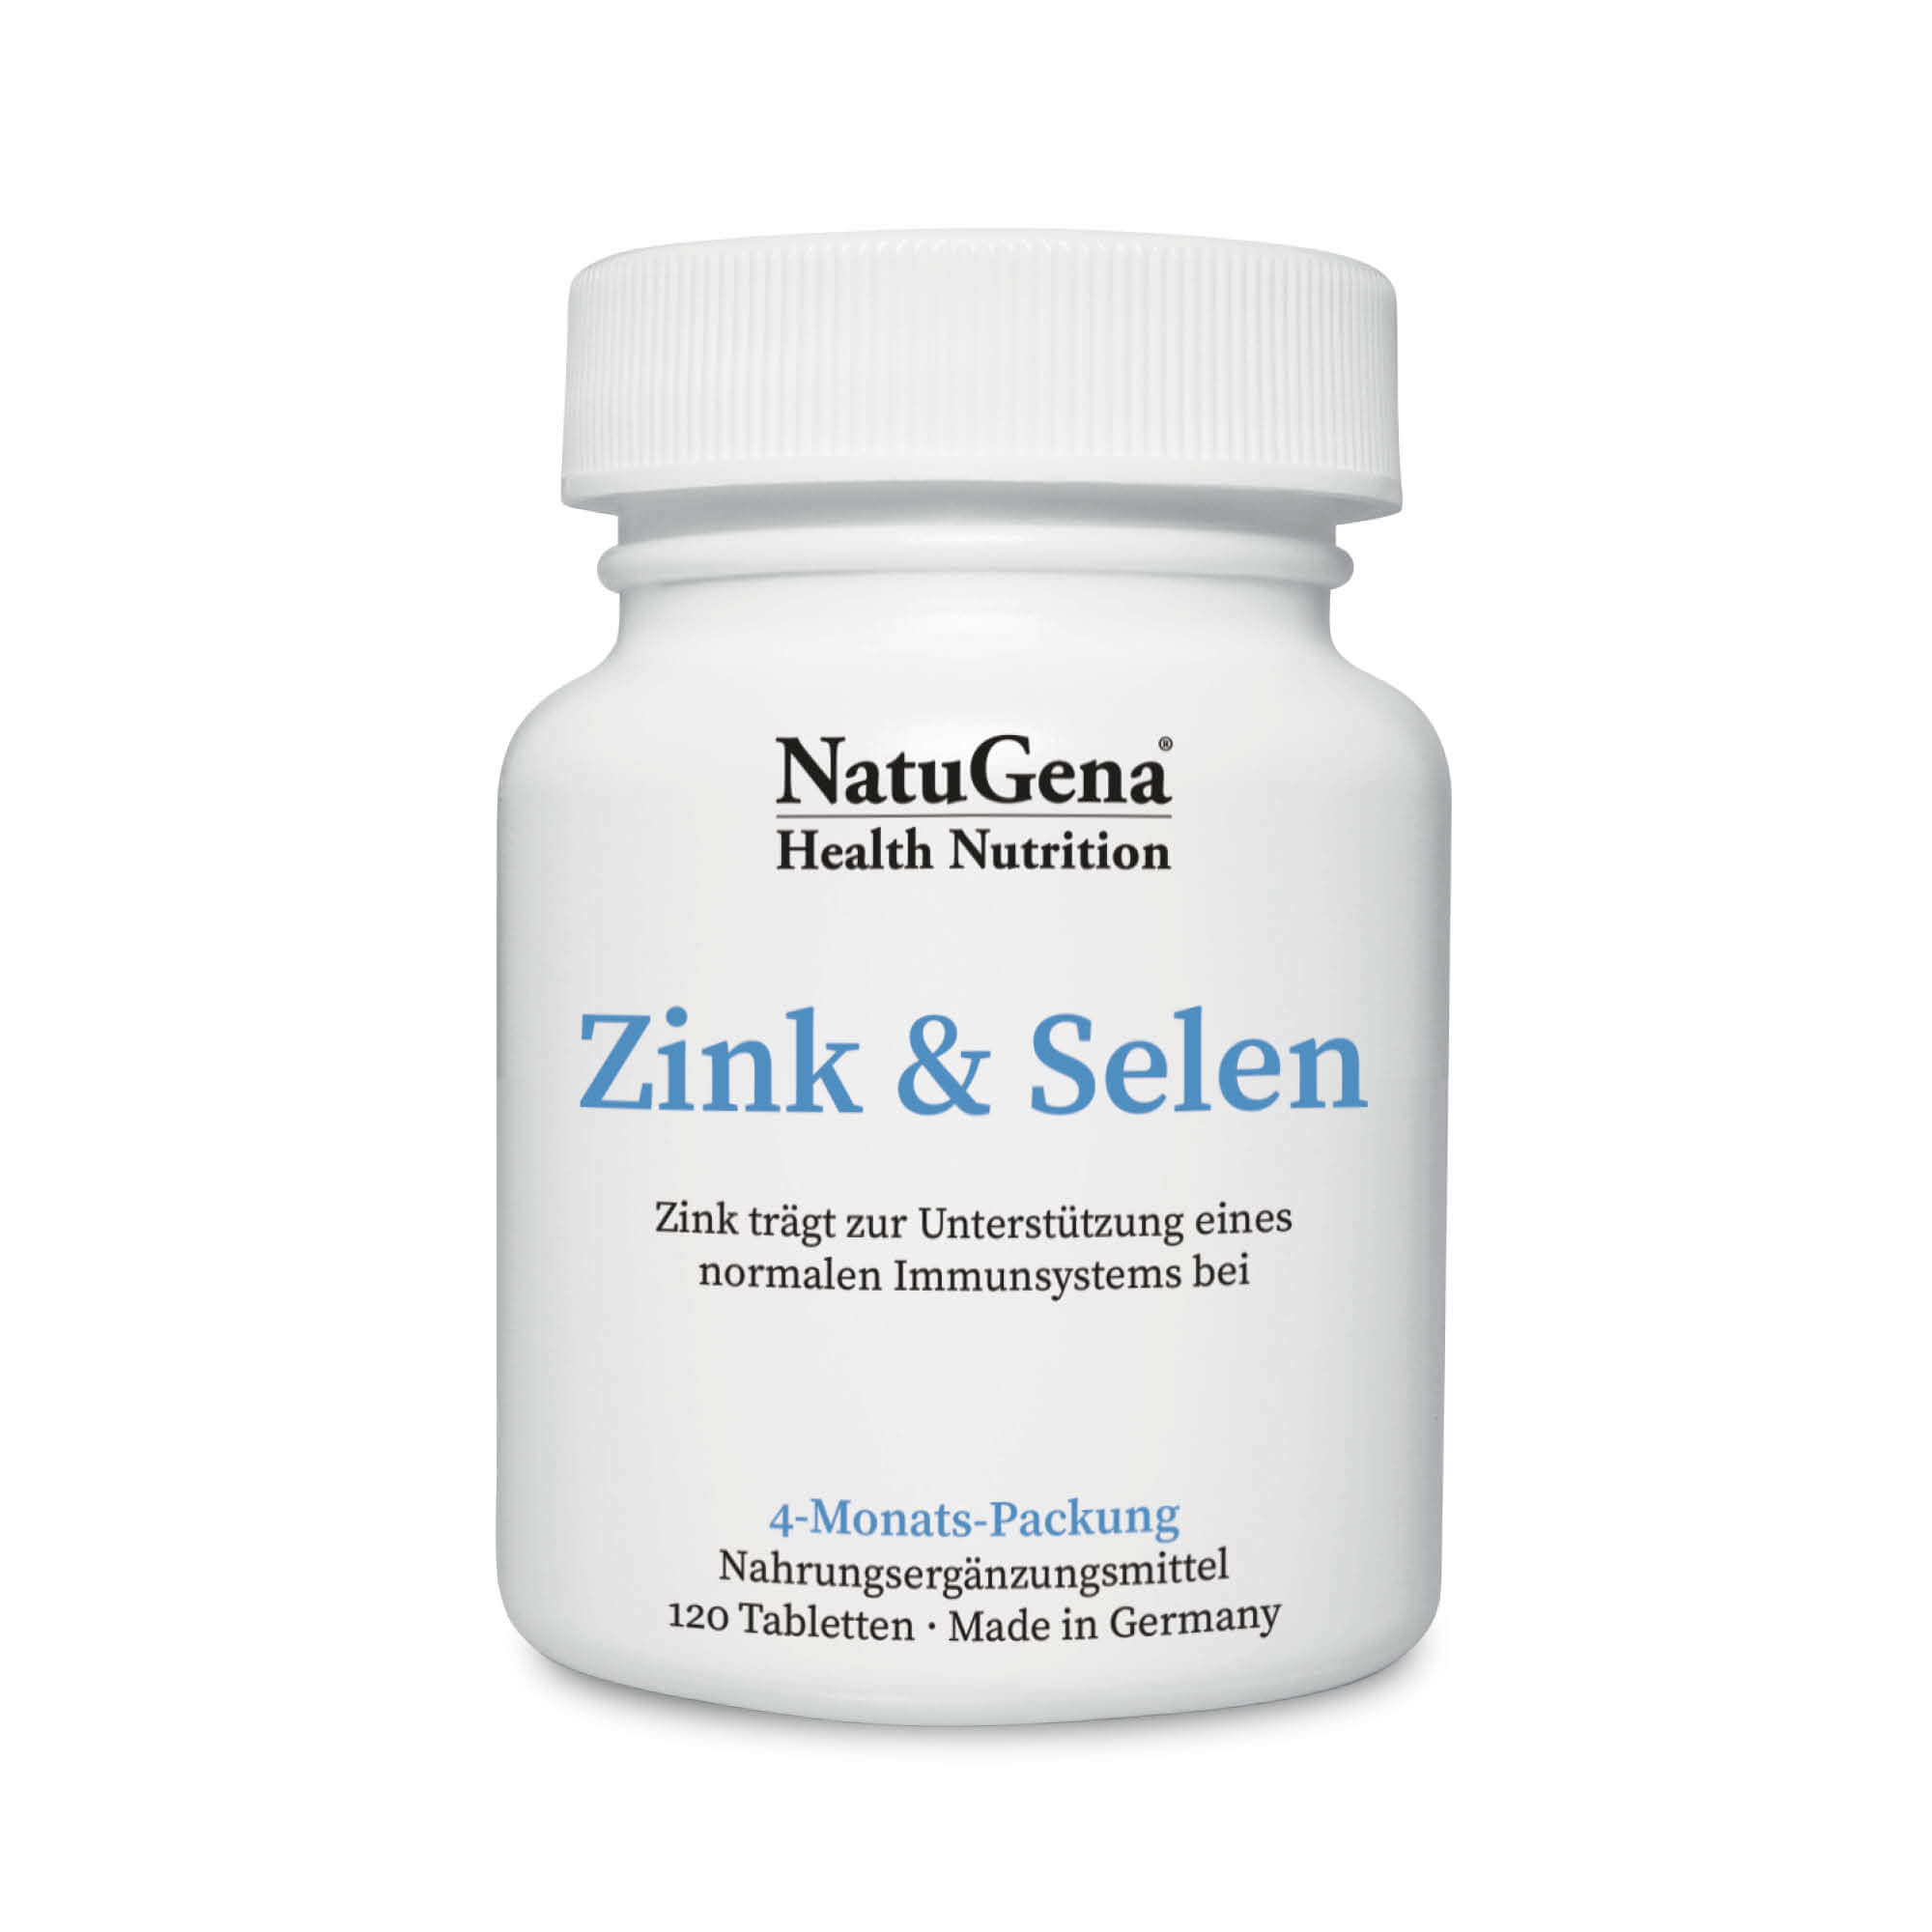 NatuGena Zink & Selen | 120 Tabletten - Unterstützung für Immunsystem und Zellschutz